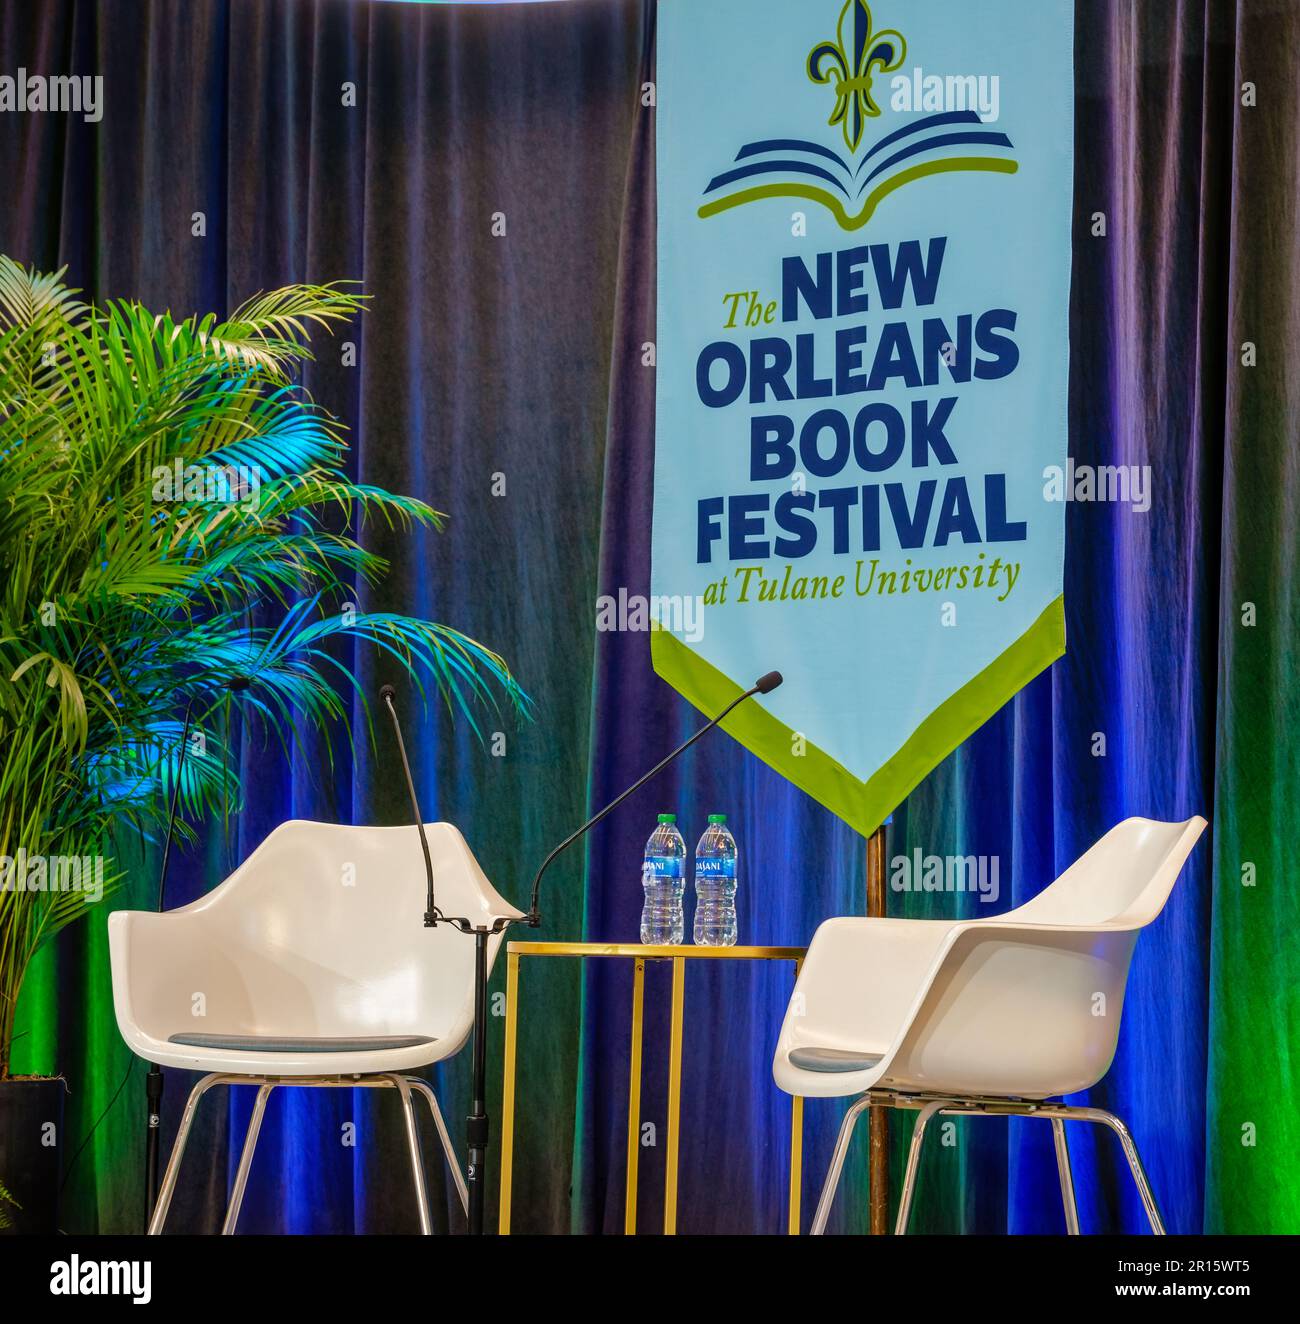 NEW ORLEANS, LA, USA - 10. MÄRZ 2023: Zwei Plastikstühle, zwei Flaschen Wasser und ein Banner für das New Orleans Book Festival Stockfoto